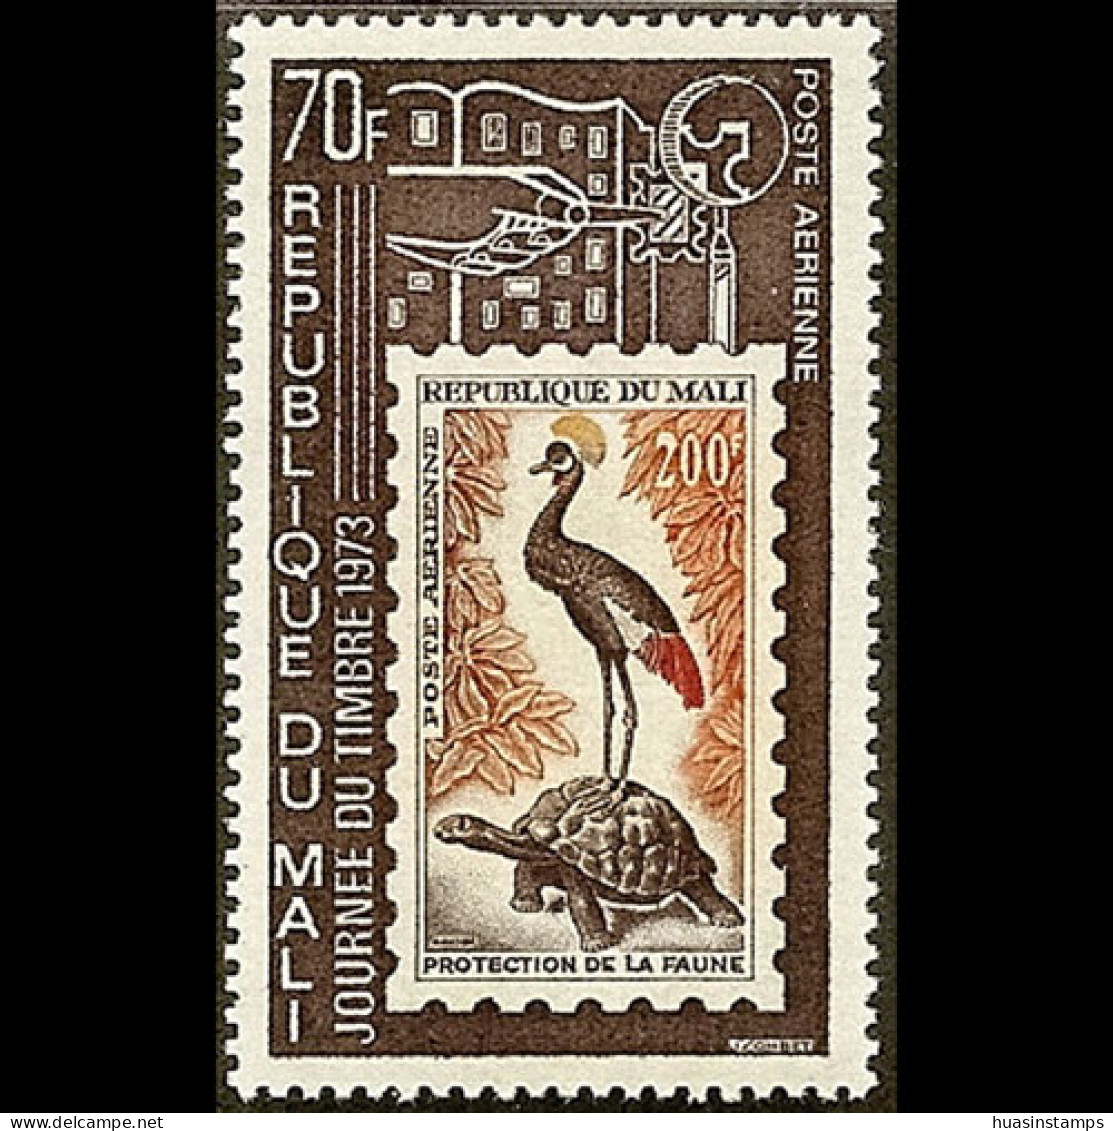 MALI 1973 - Scott# C175 Stamp Day Set Of 1 MNH - Malí (1959-...)